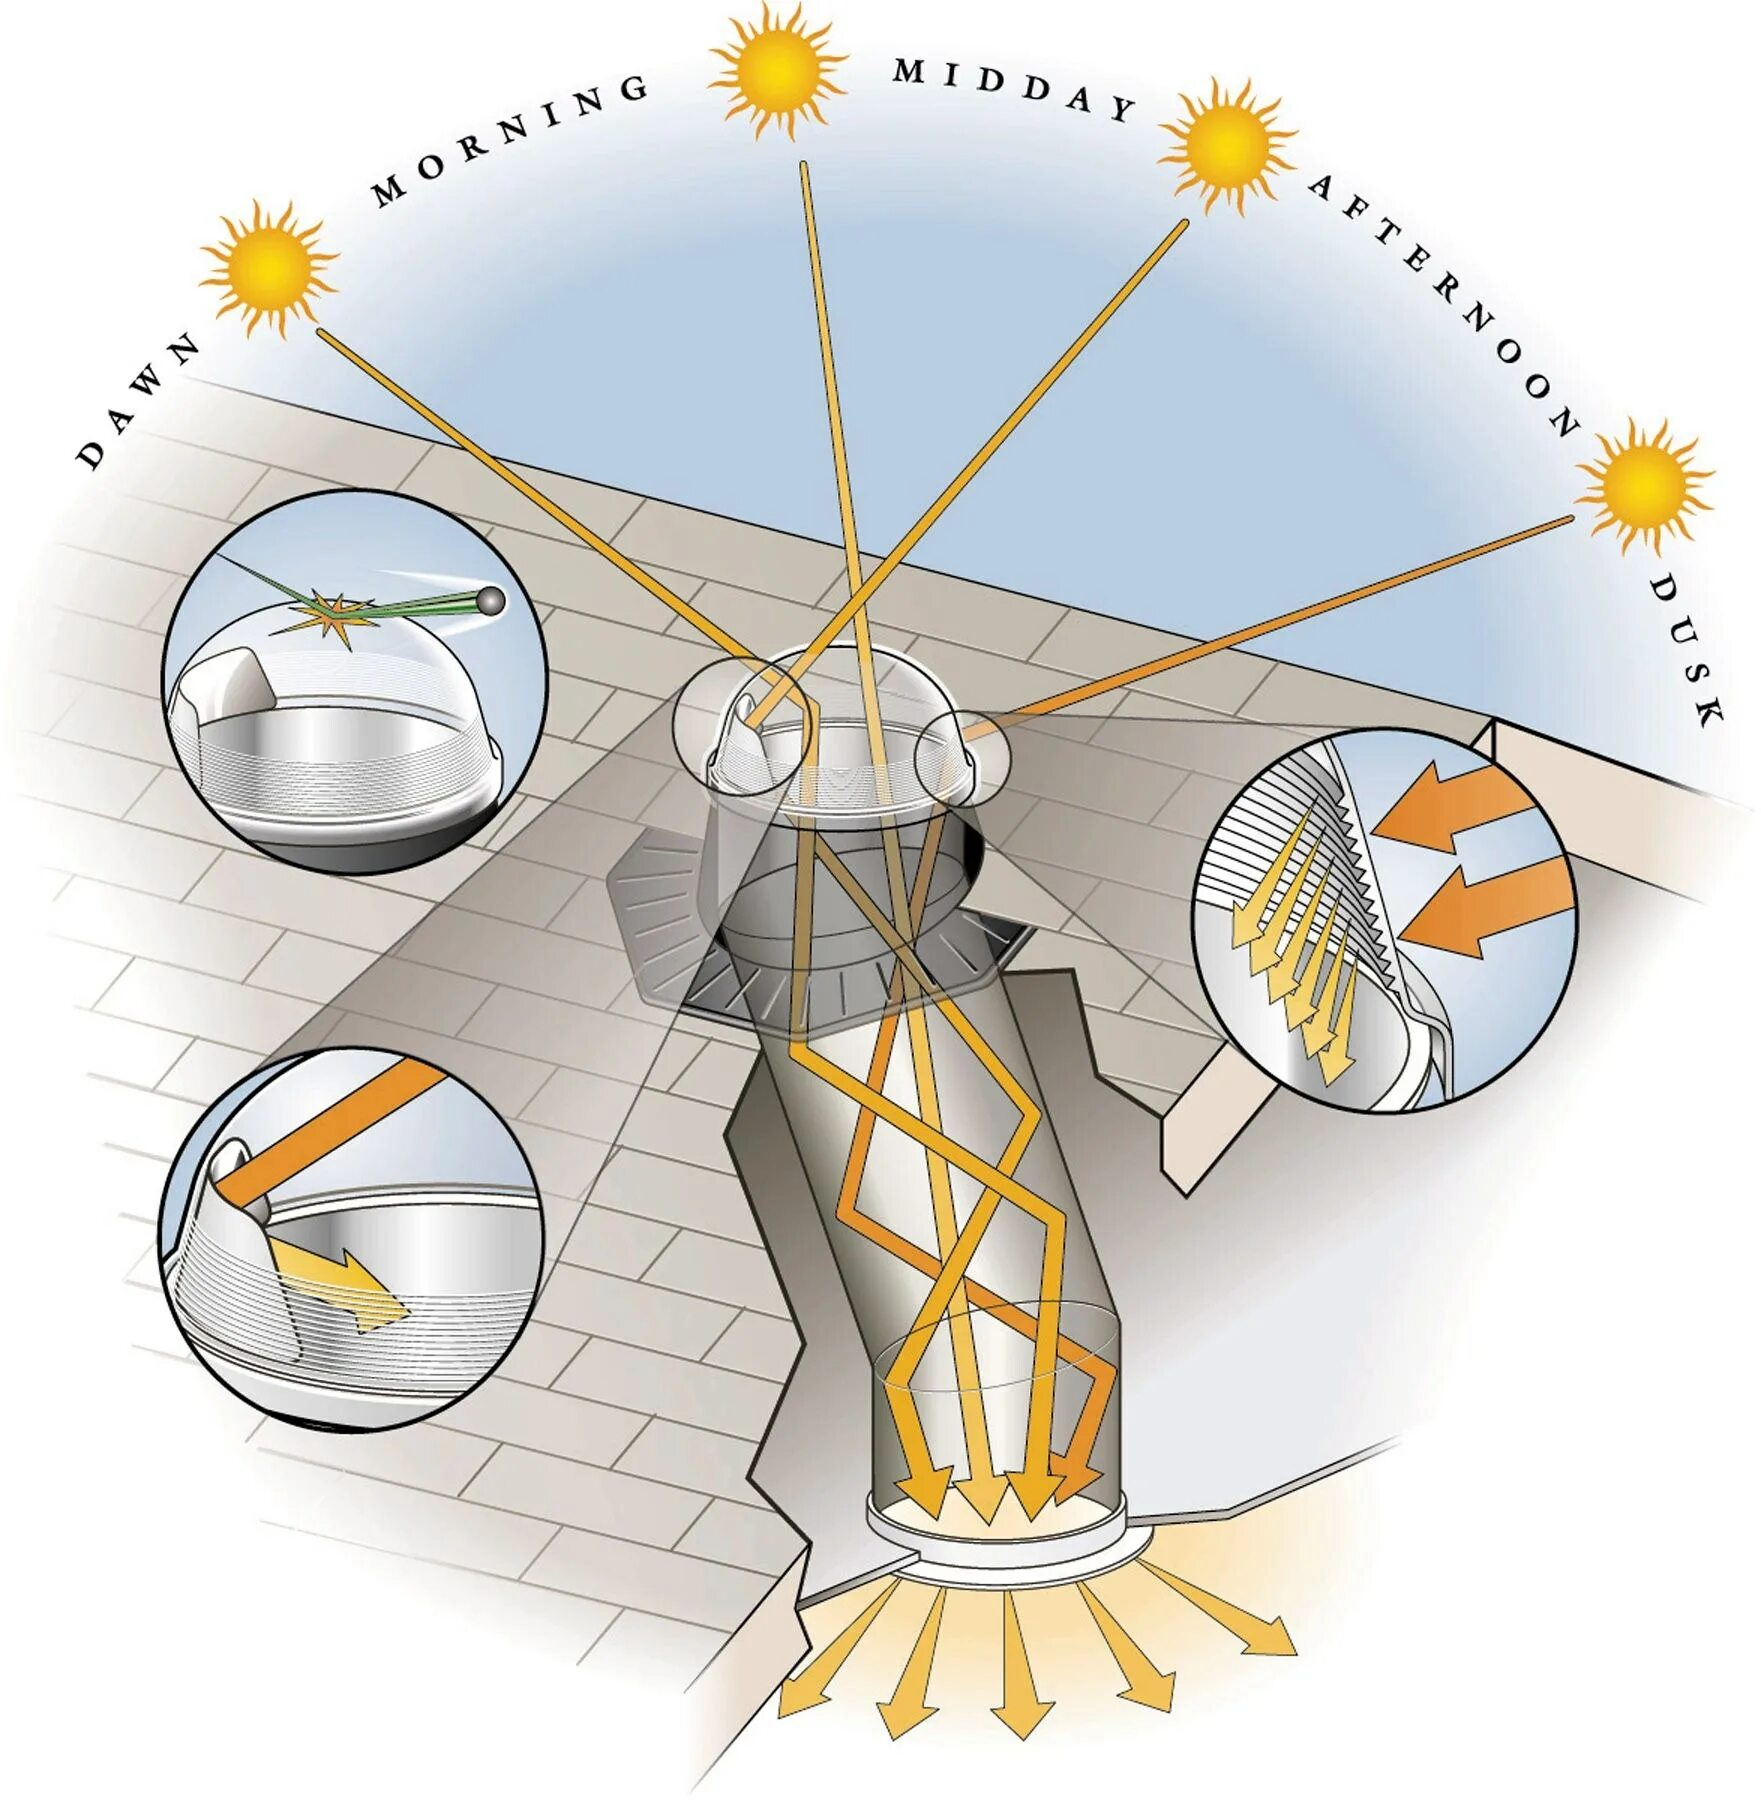 Световоды solatube. Solatube солнечное освещение. Система передачи солнечного света световод. Световоды для освещения.